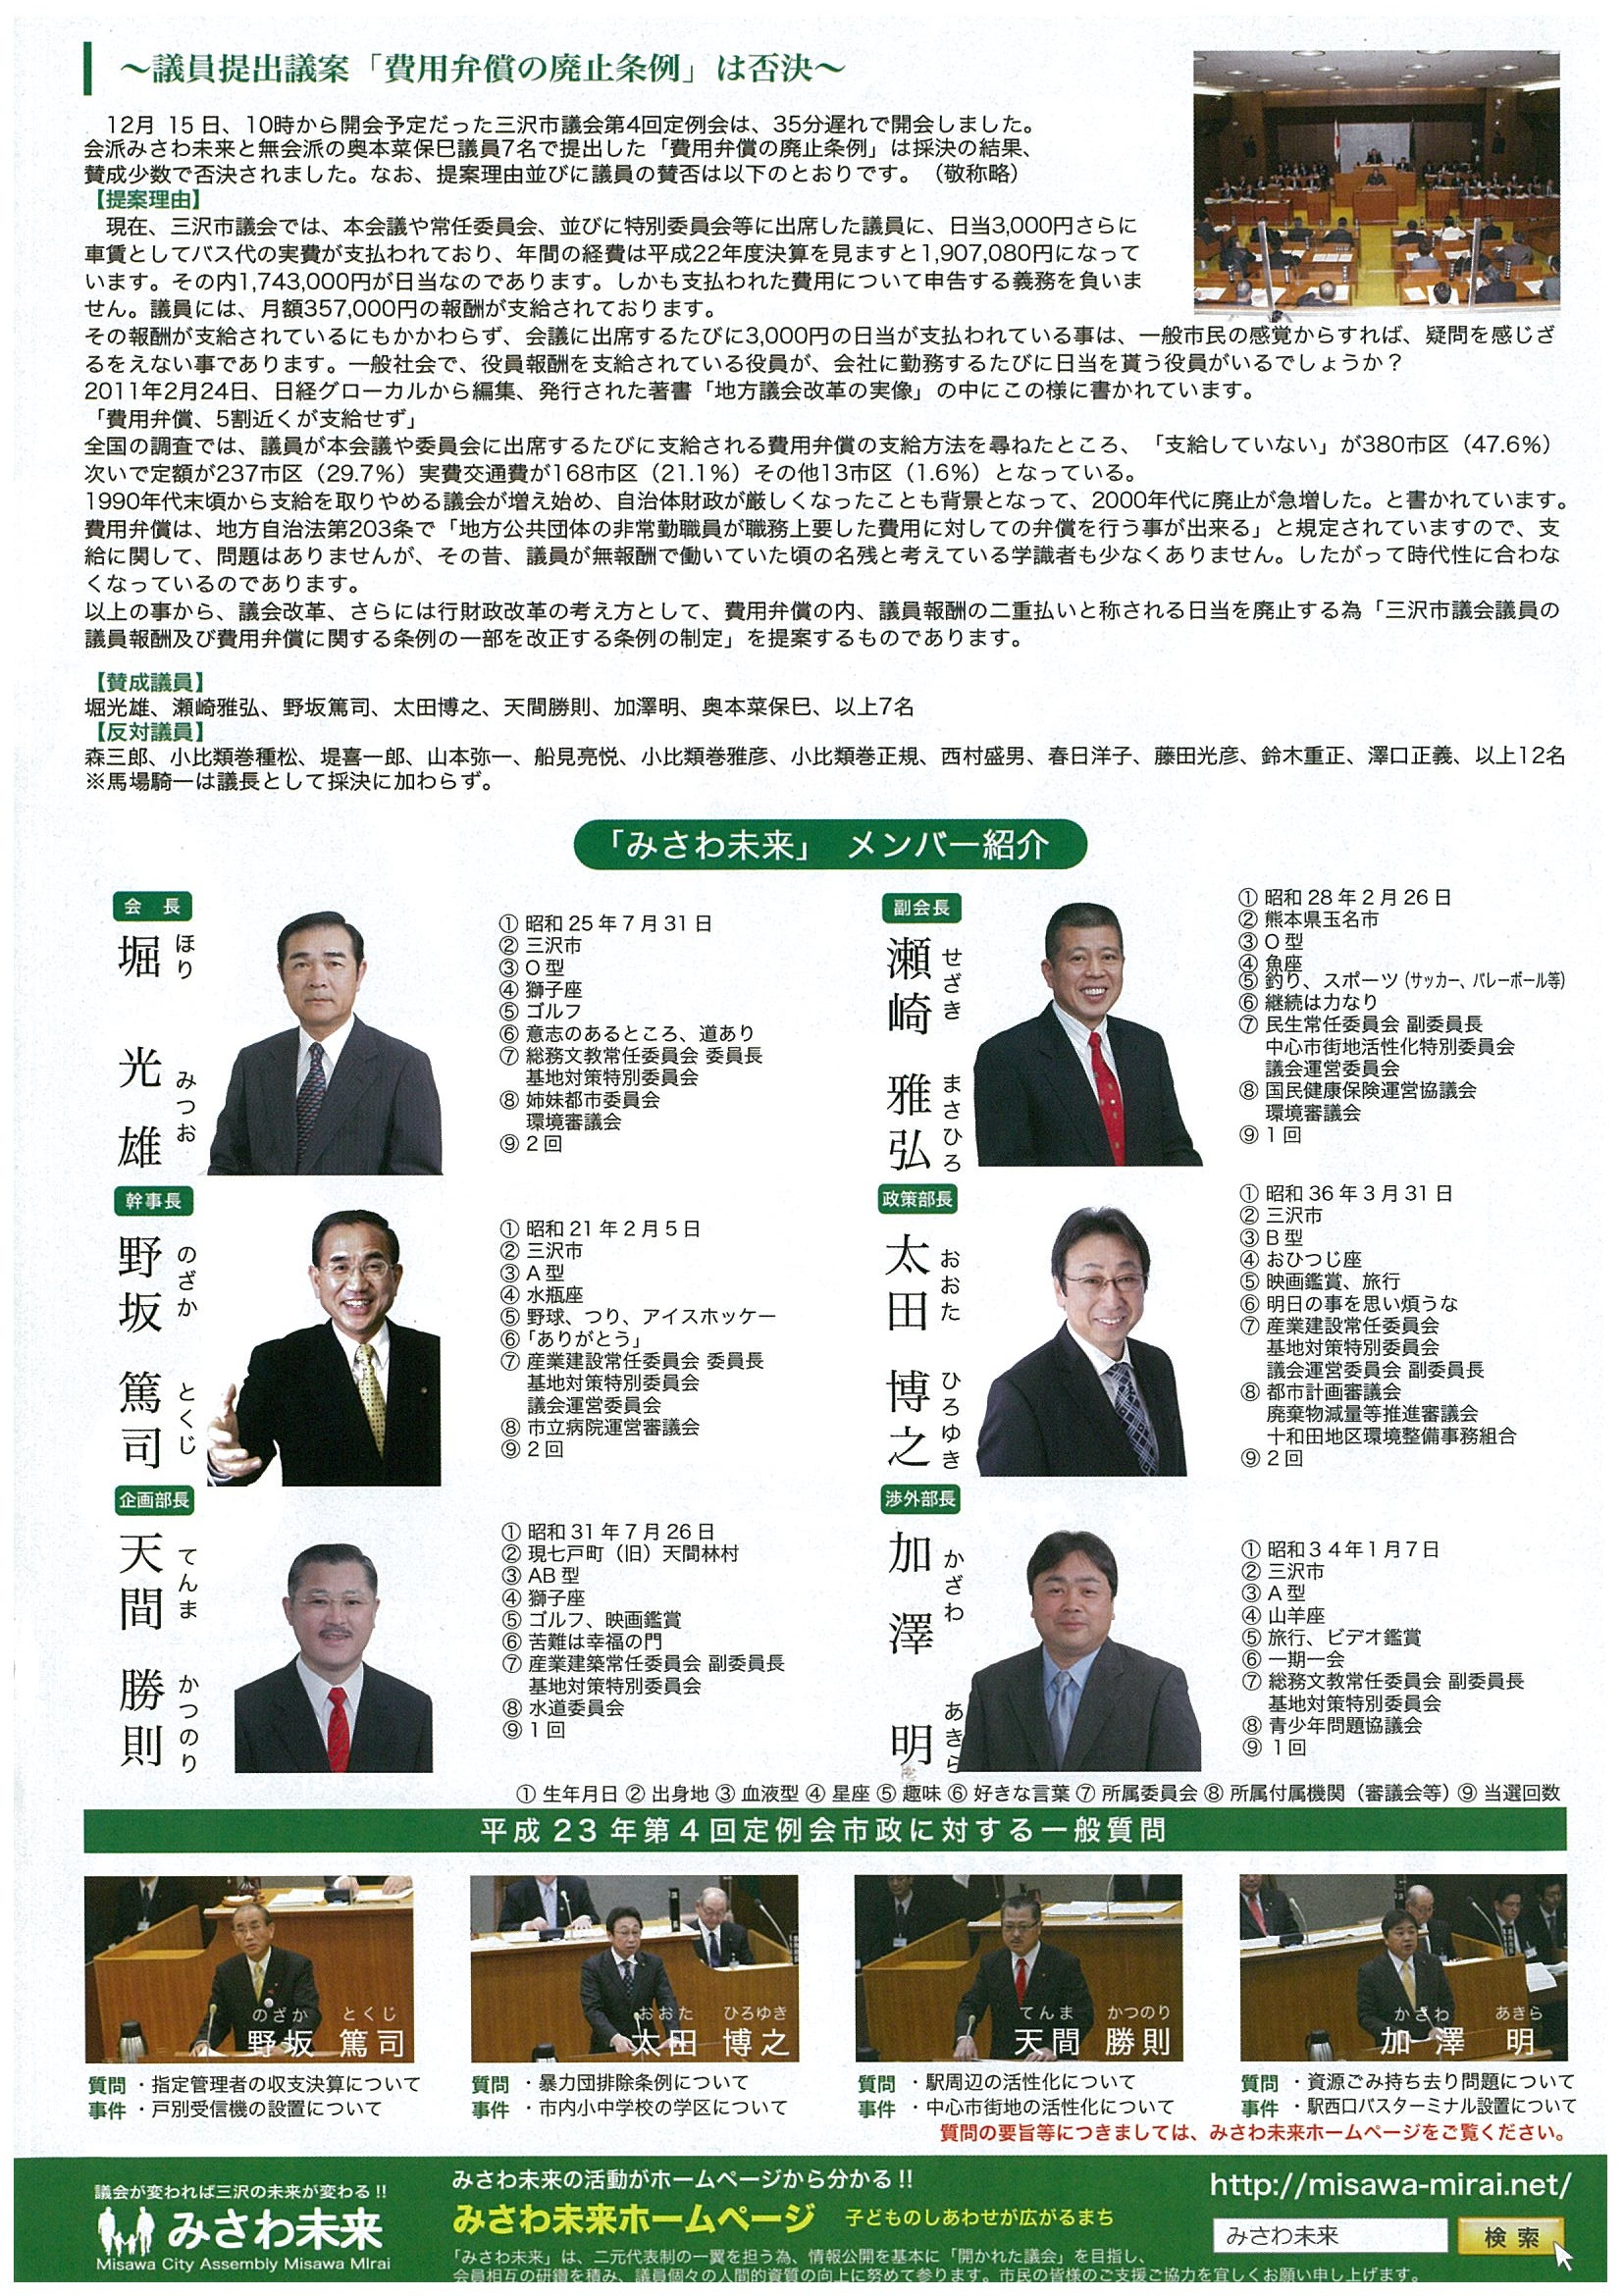 会派みさわ未来の情報紙vol 7を掲載しました 元三沢市議会議員 太田博之